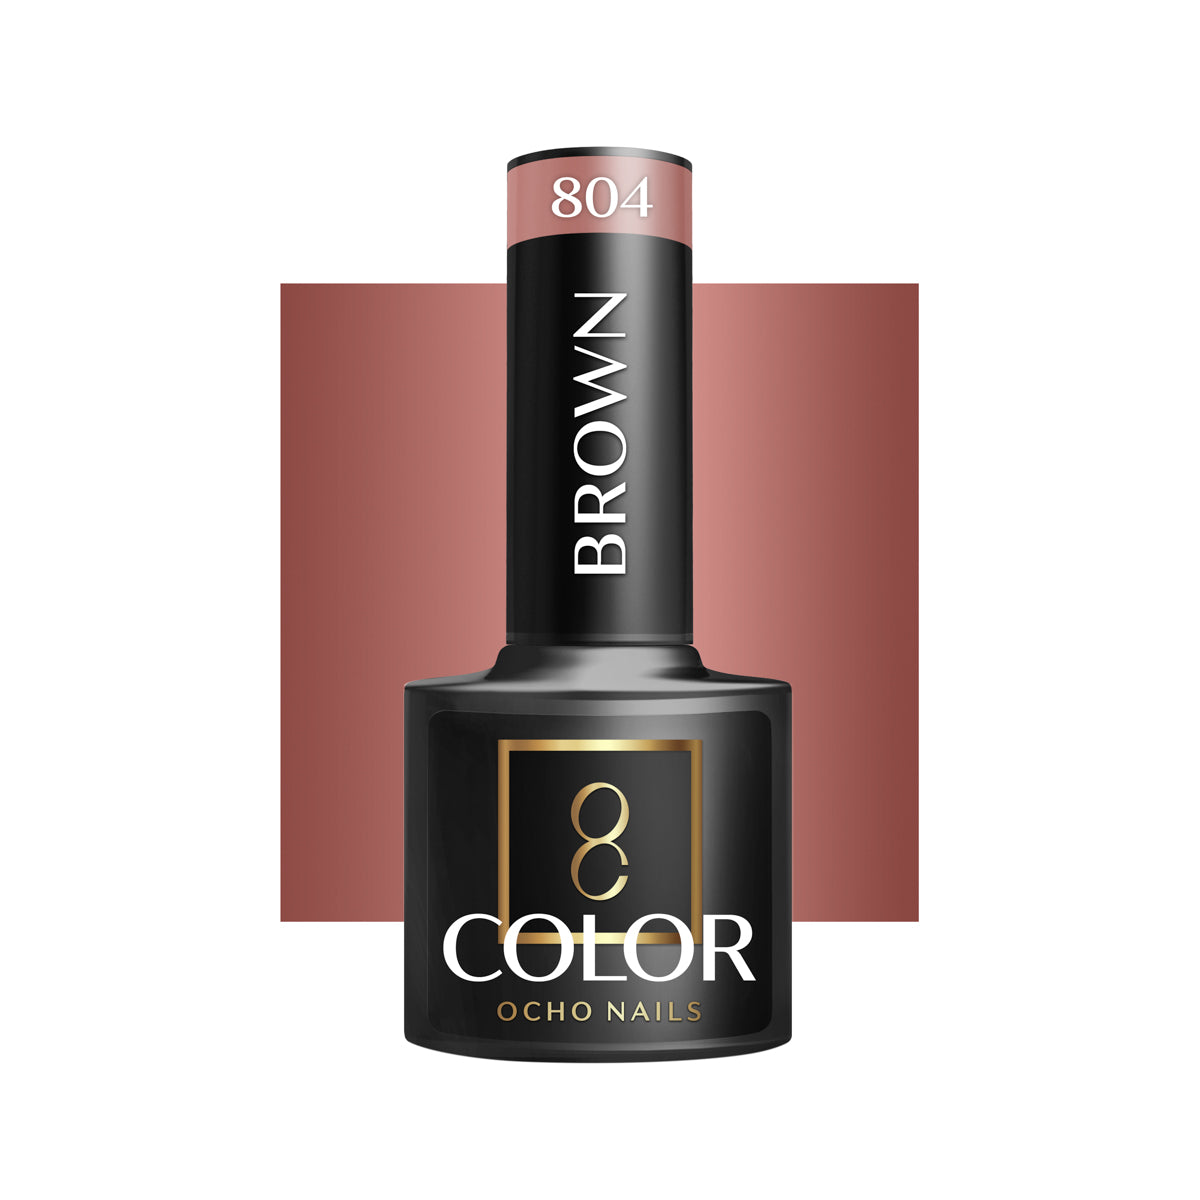 OCHO NAILS Hybrid nail polish brown 804 -5 g